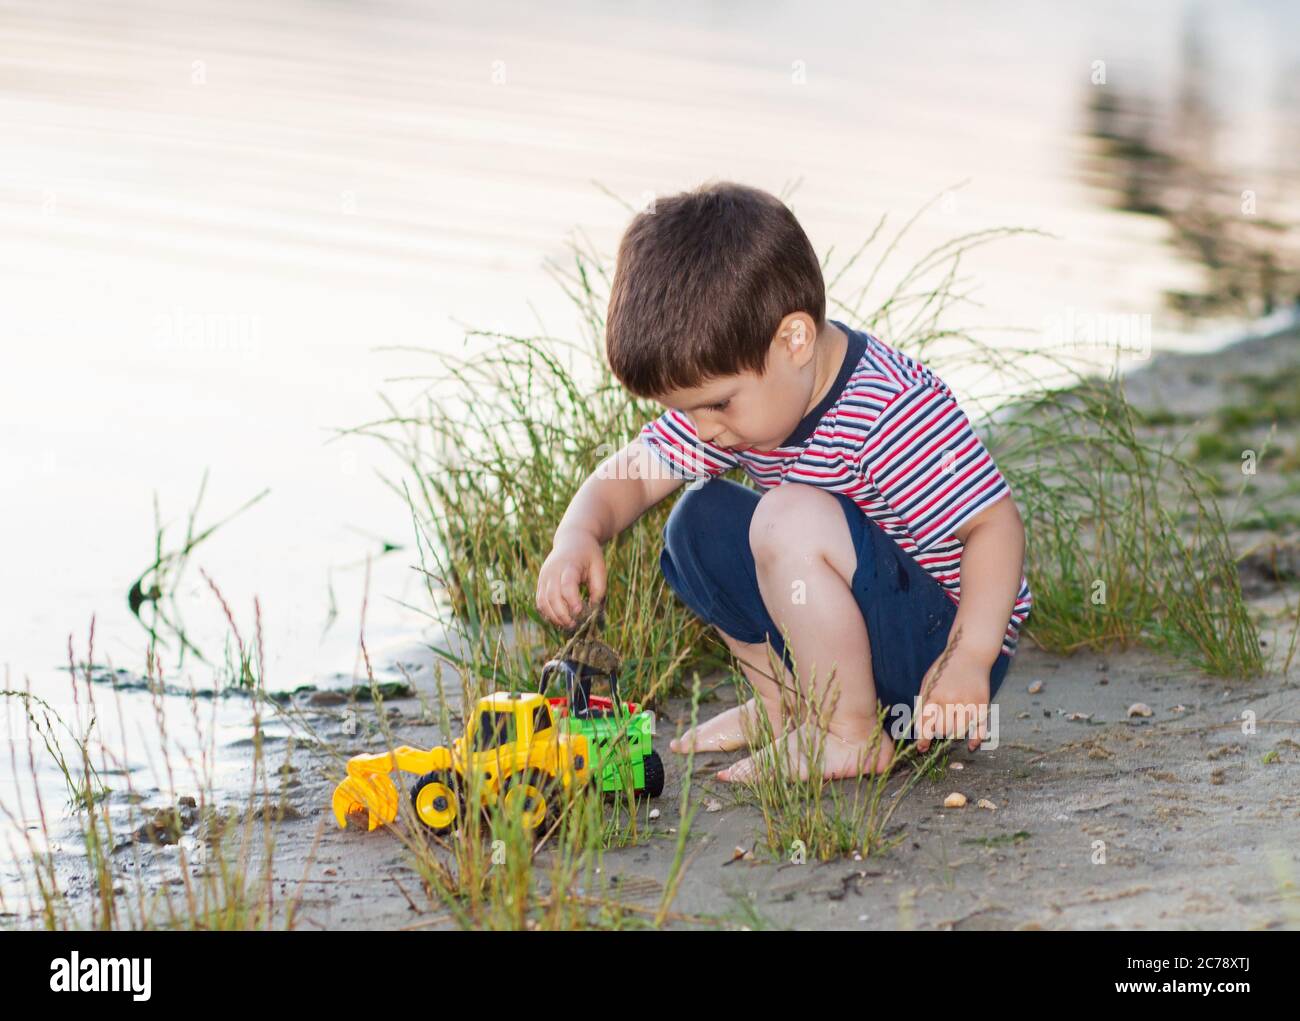 Un petit garçon de 3 ans joue sur la rive de la rivière avec des jouets  lumineux, du sable. Jeux pour enfants près de l'étang en plein air en été  Photo Stock -